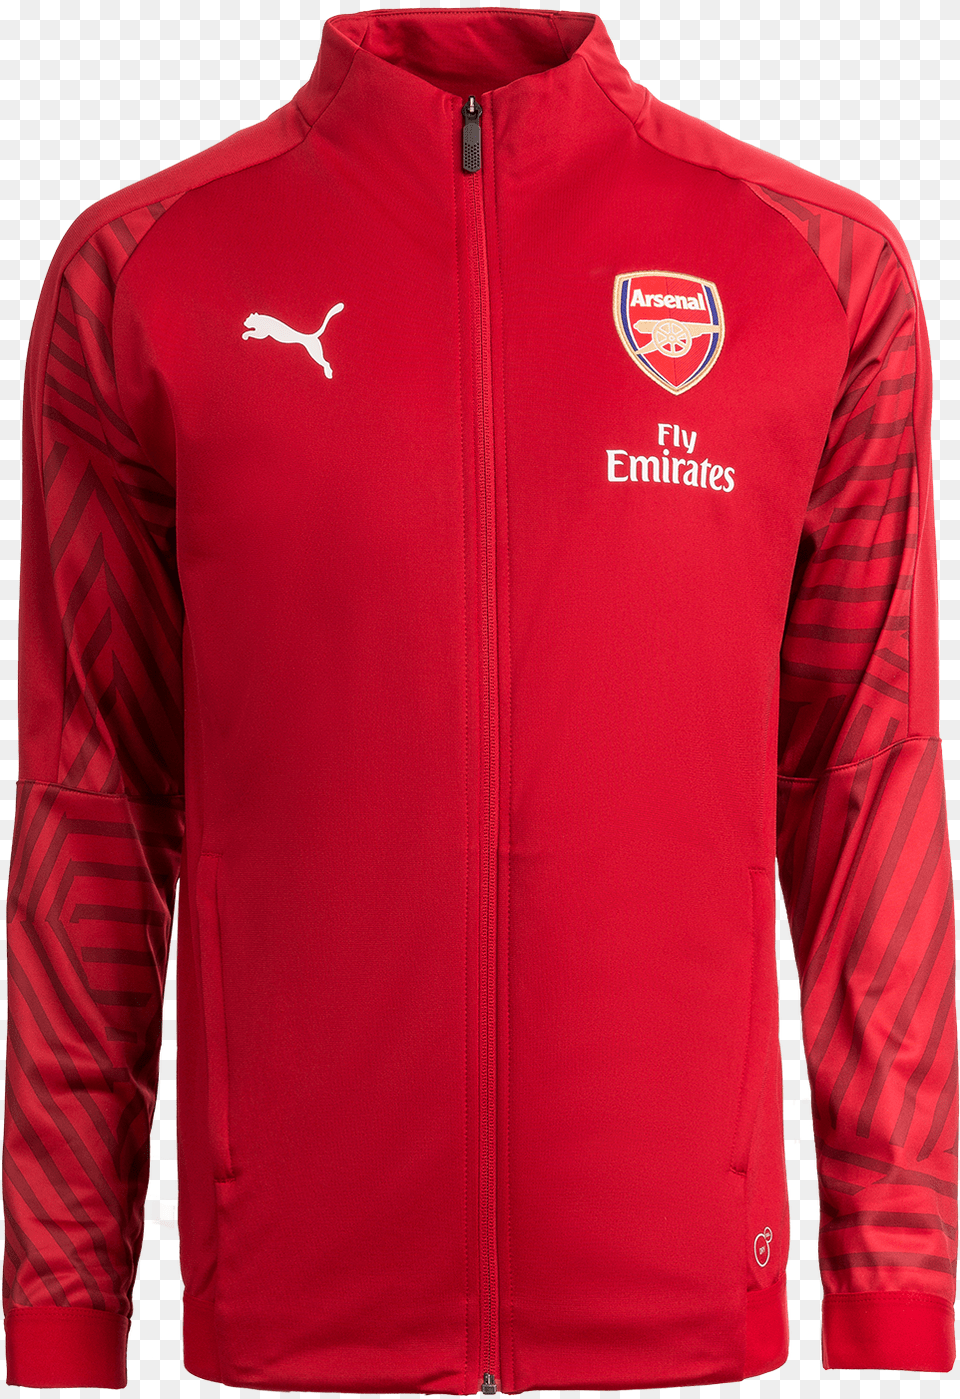 Arsenal Stadium Jacket Arsenal, Clothing, Coat Free Png